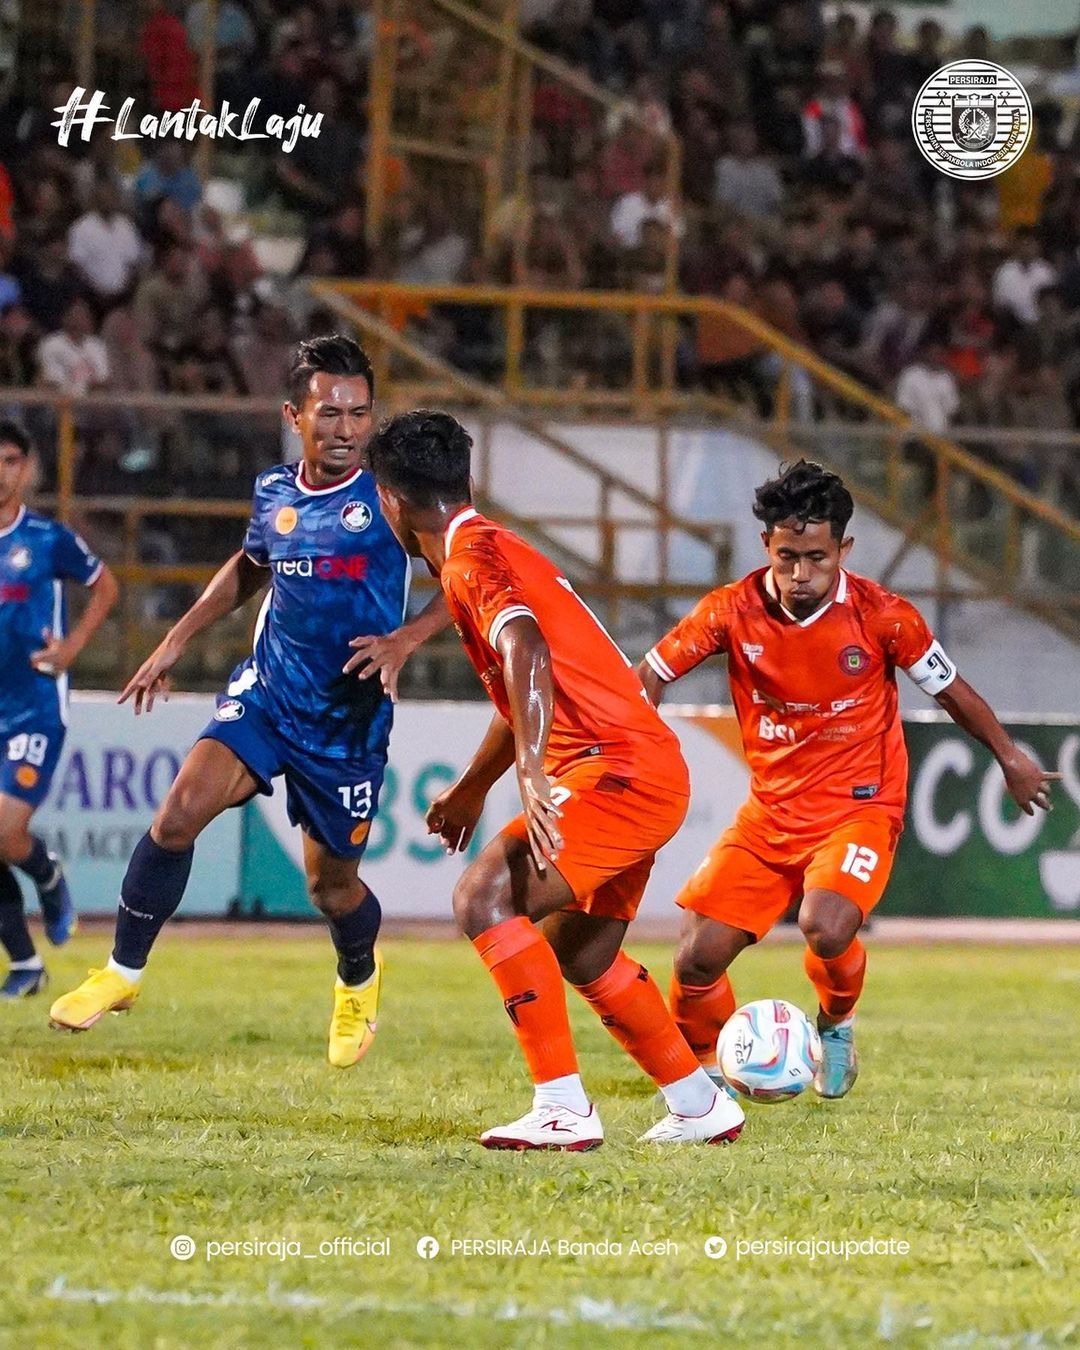 Andik Vermansyah jadi kapten saat laga uji coba Persiraja Banda Aceh vs PDRM FC